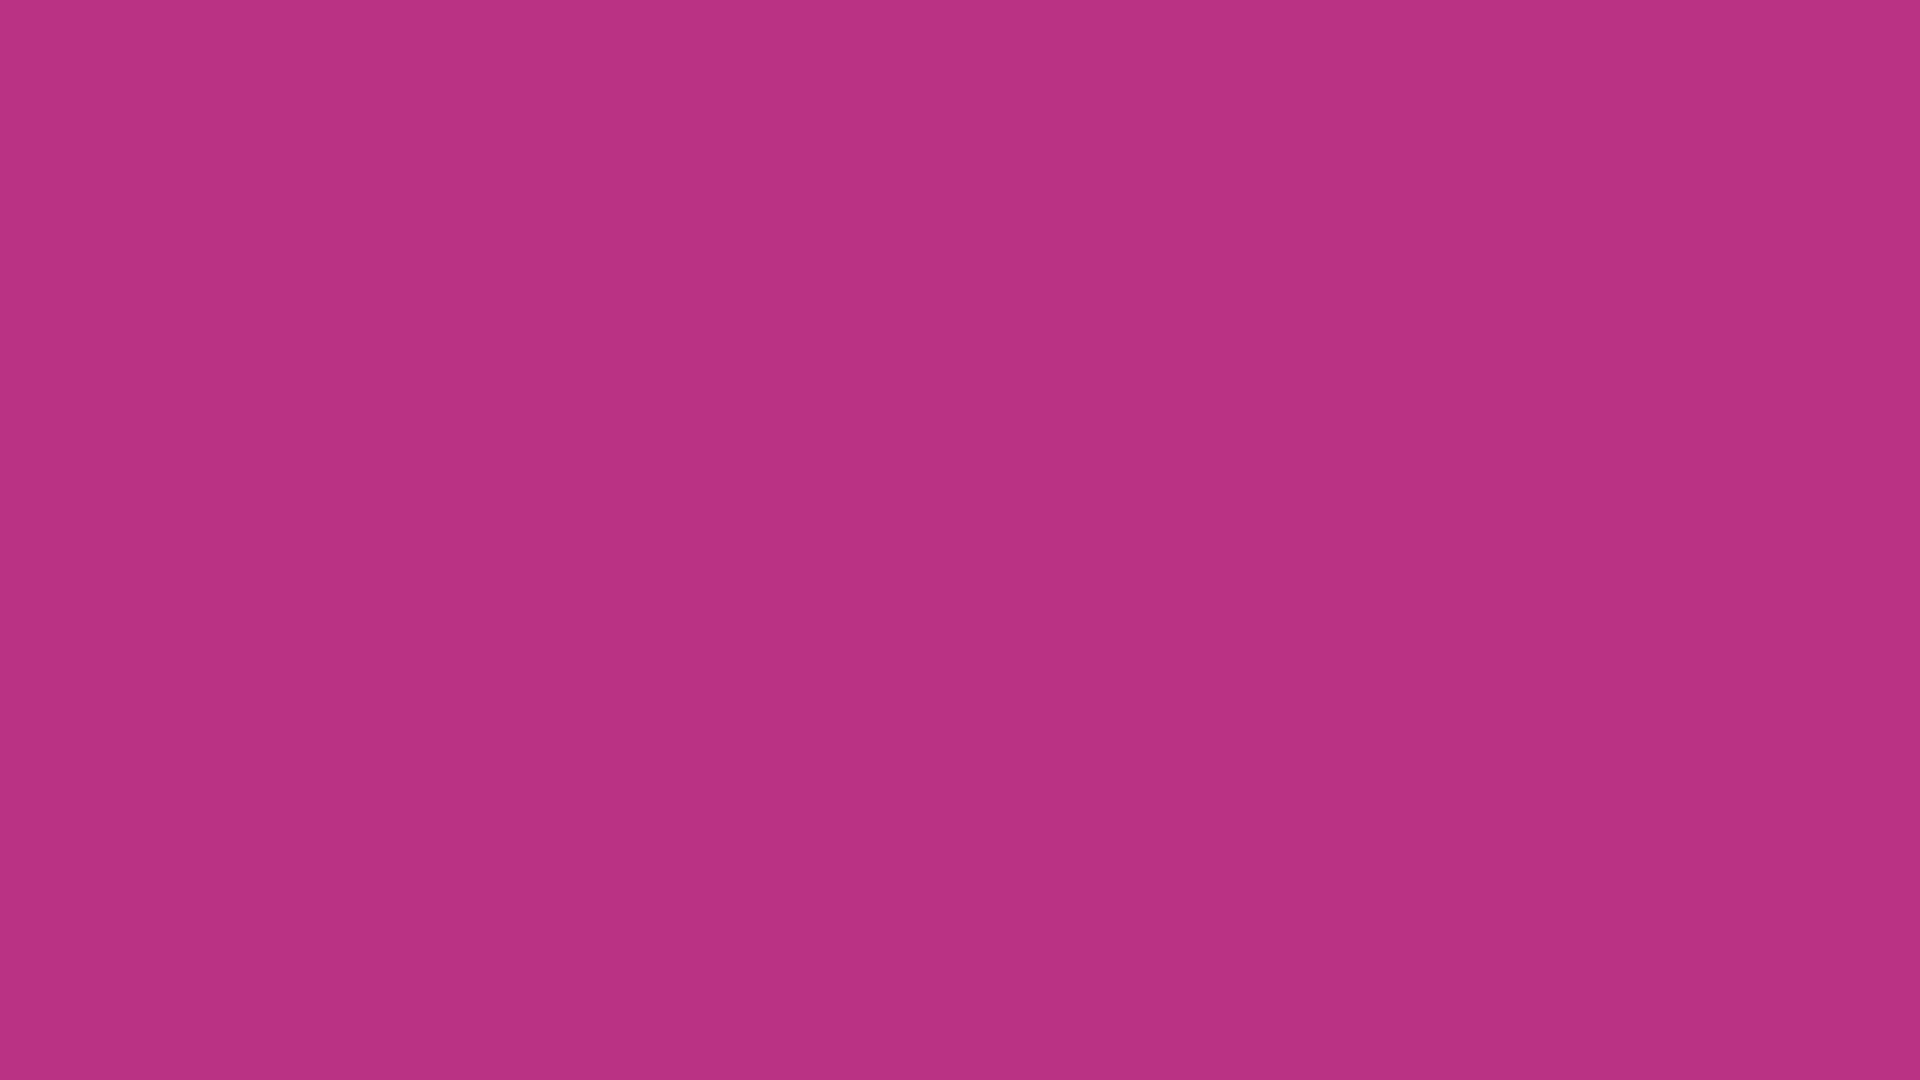 1920x1080 Medium Red-violet Solid Color Background